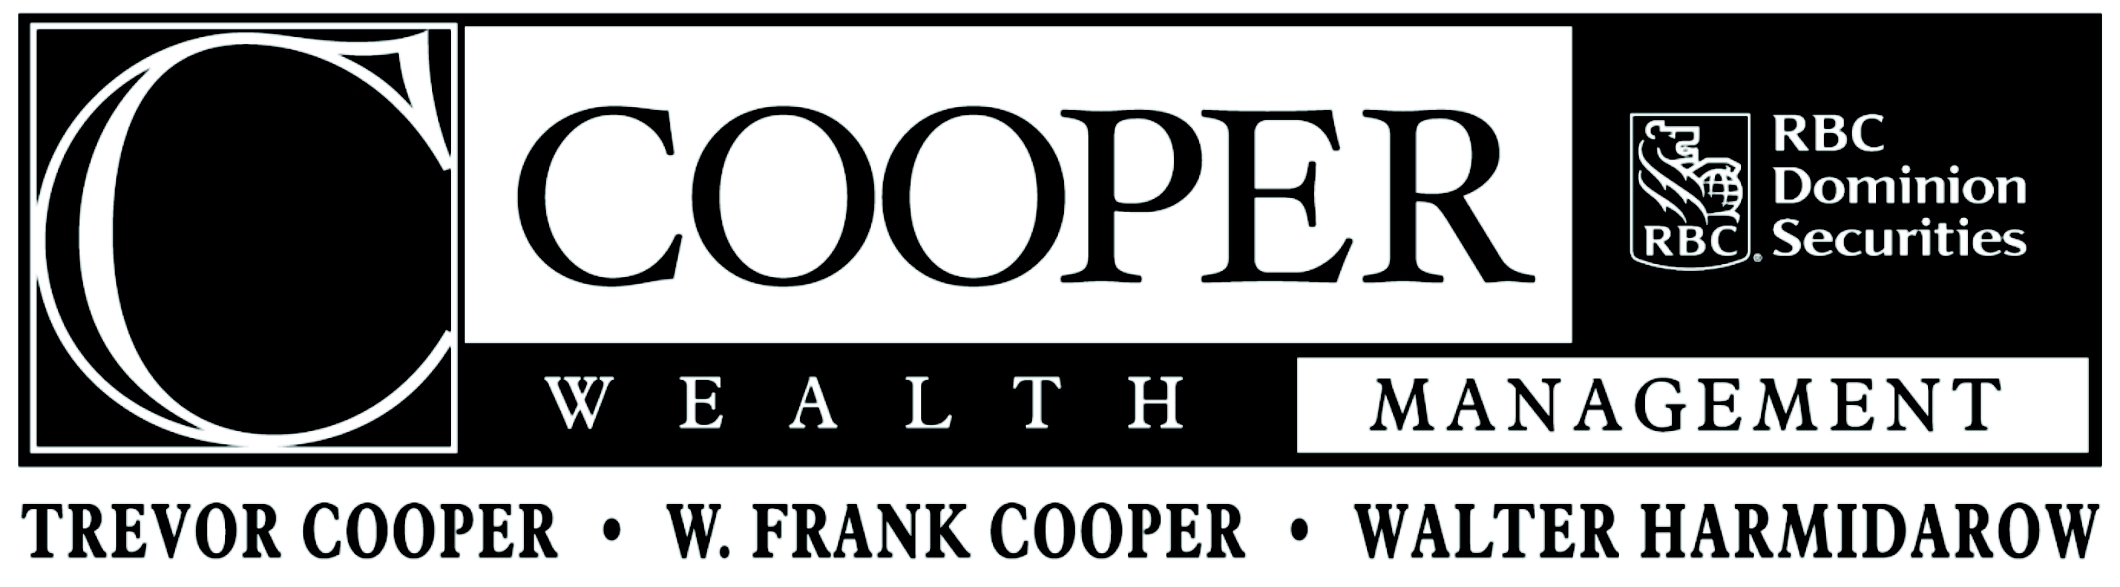 Cooper Wealth